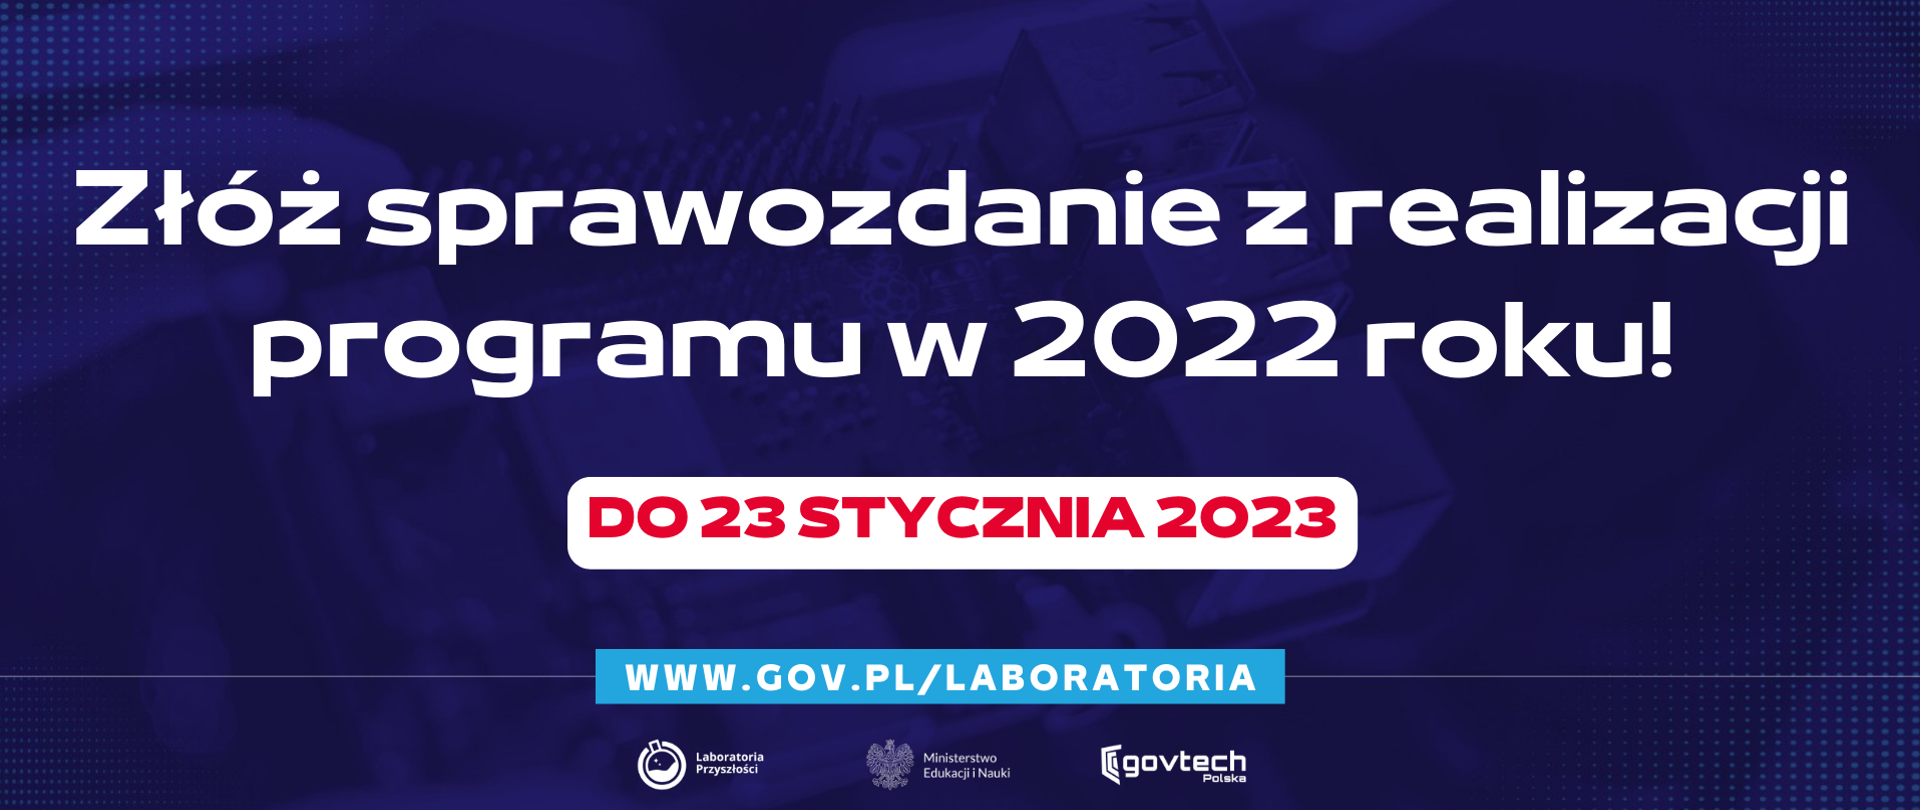 Złóż sprawozdanie z realizacji programu w 2022 roku!
DO 23 STYCZNIA 2023
www.gov.pl/laboratoria